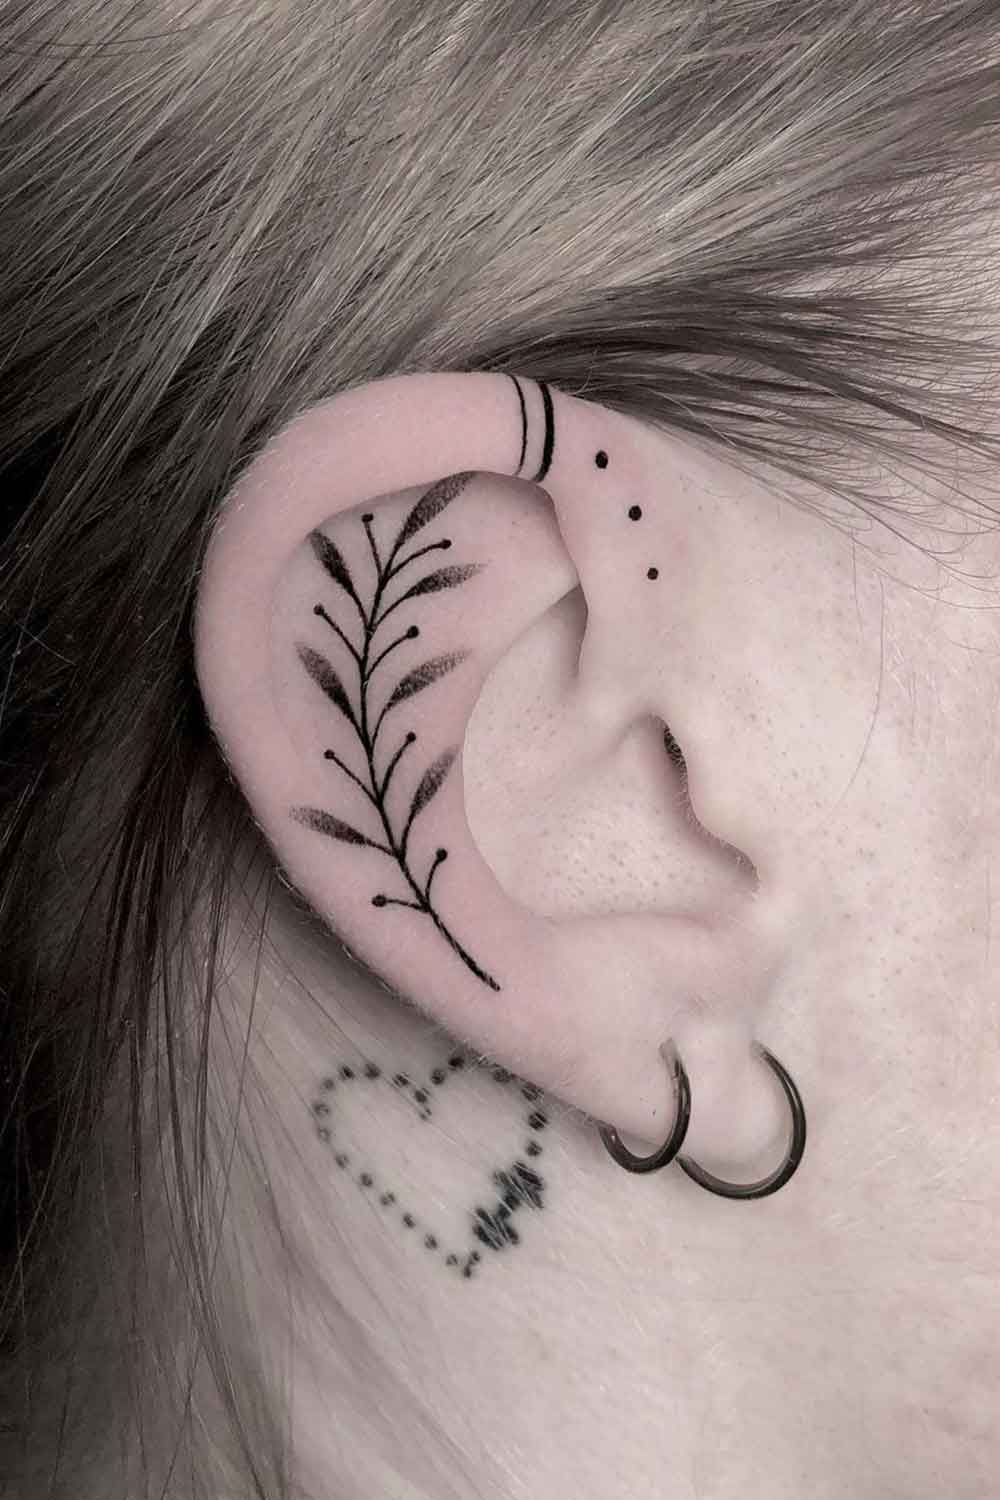 tatuaje femenino en oreja 14